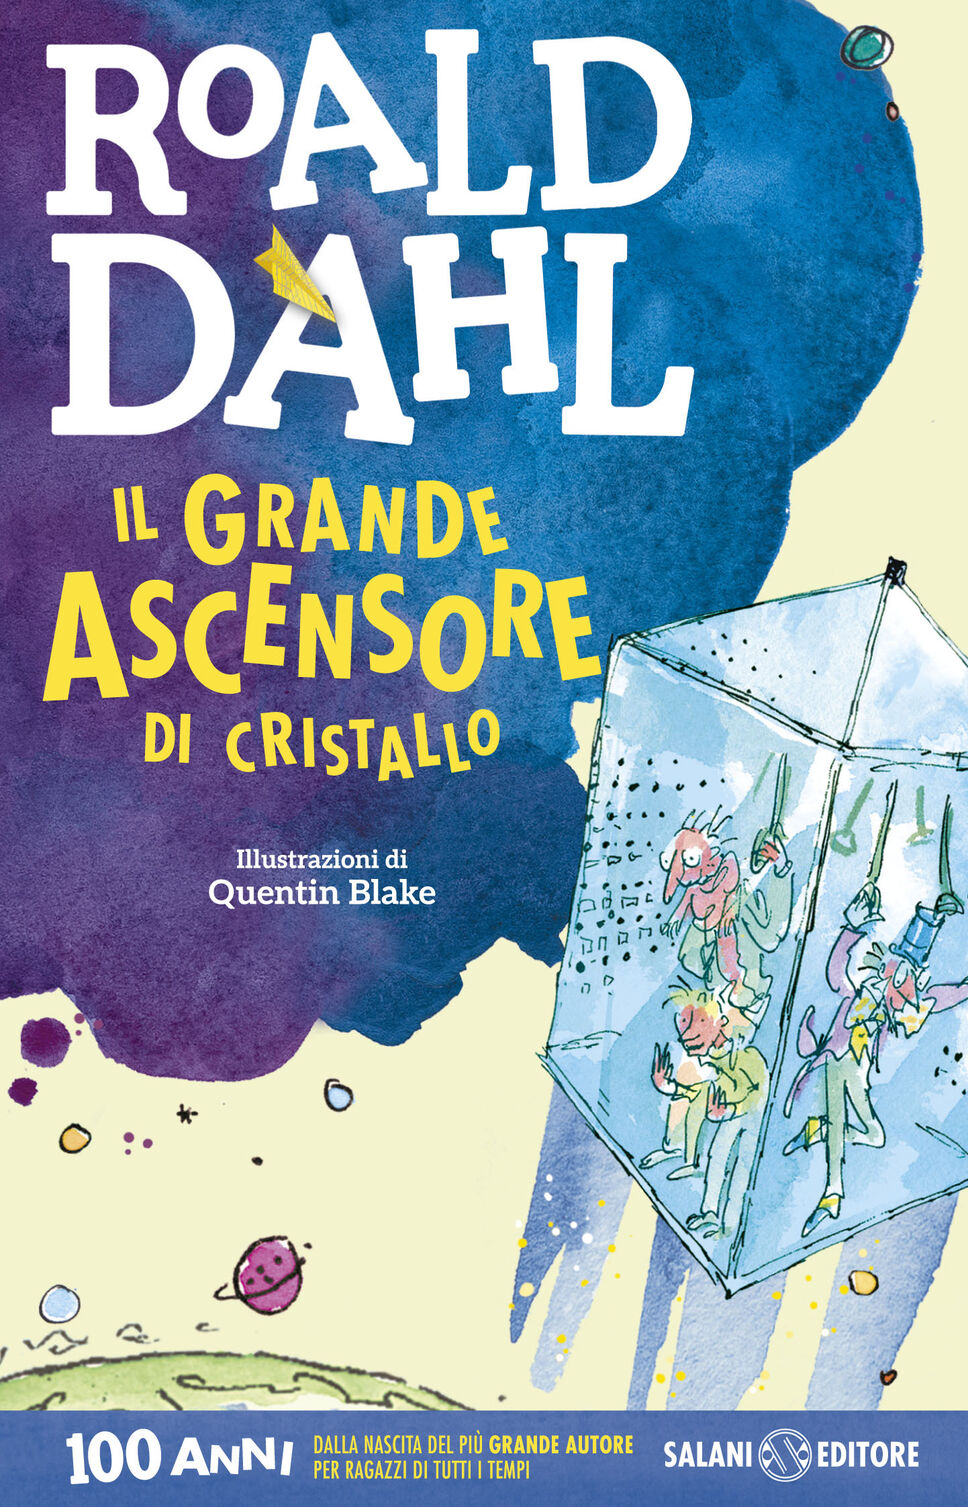 Roald Dahl: oggi è il compleanno del famoso scrittore